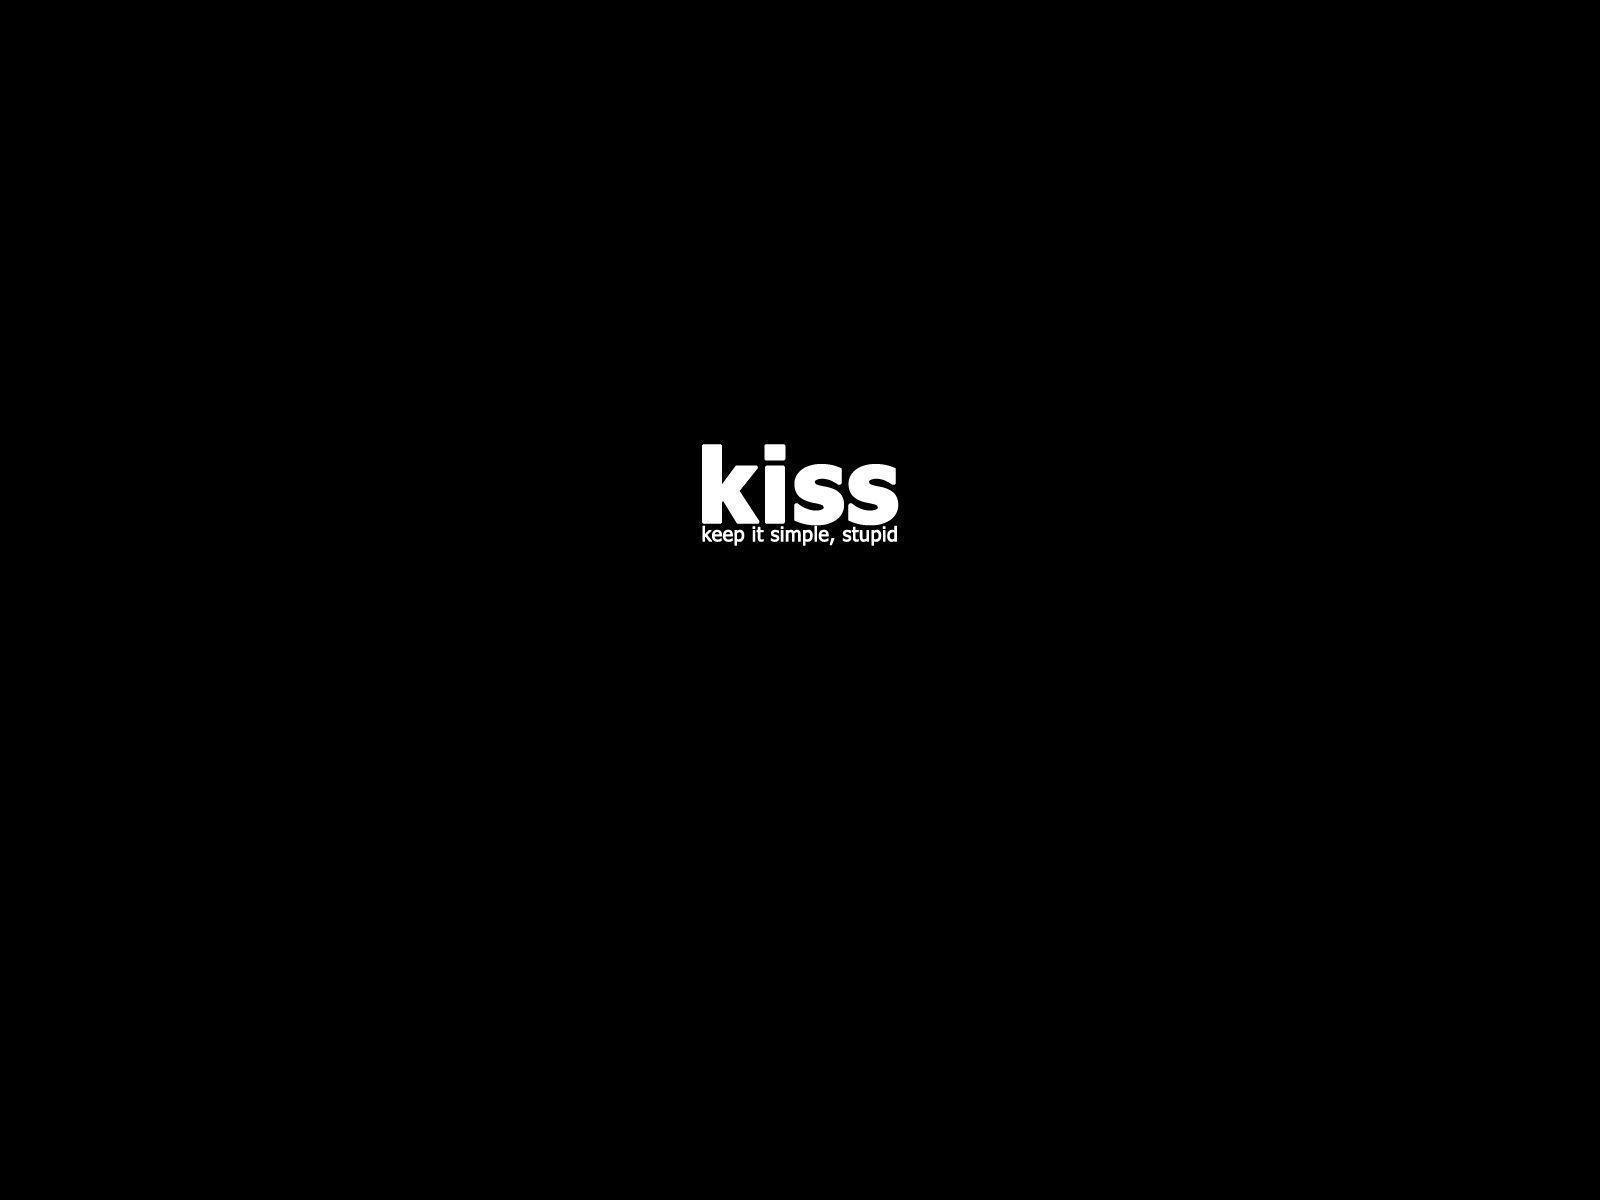 KISS It Simple, Stupid